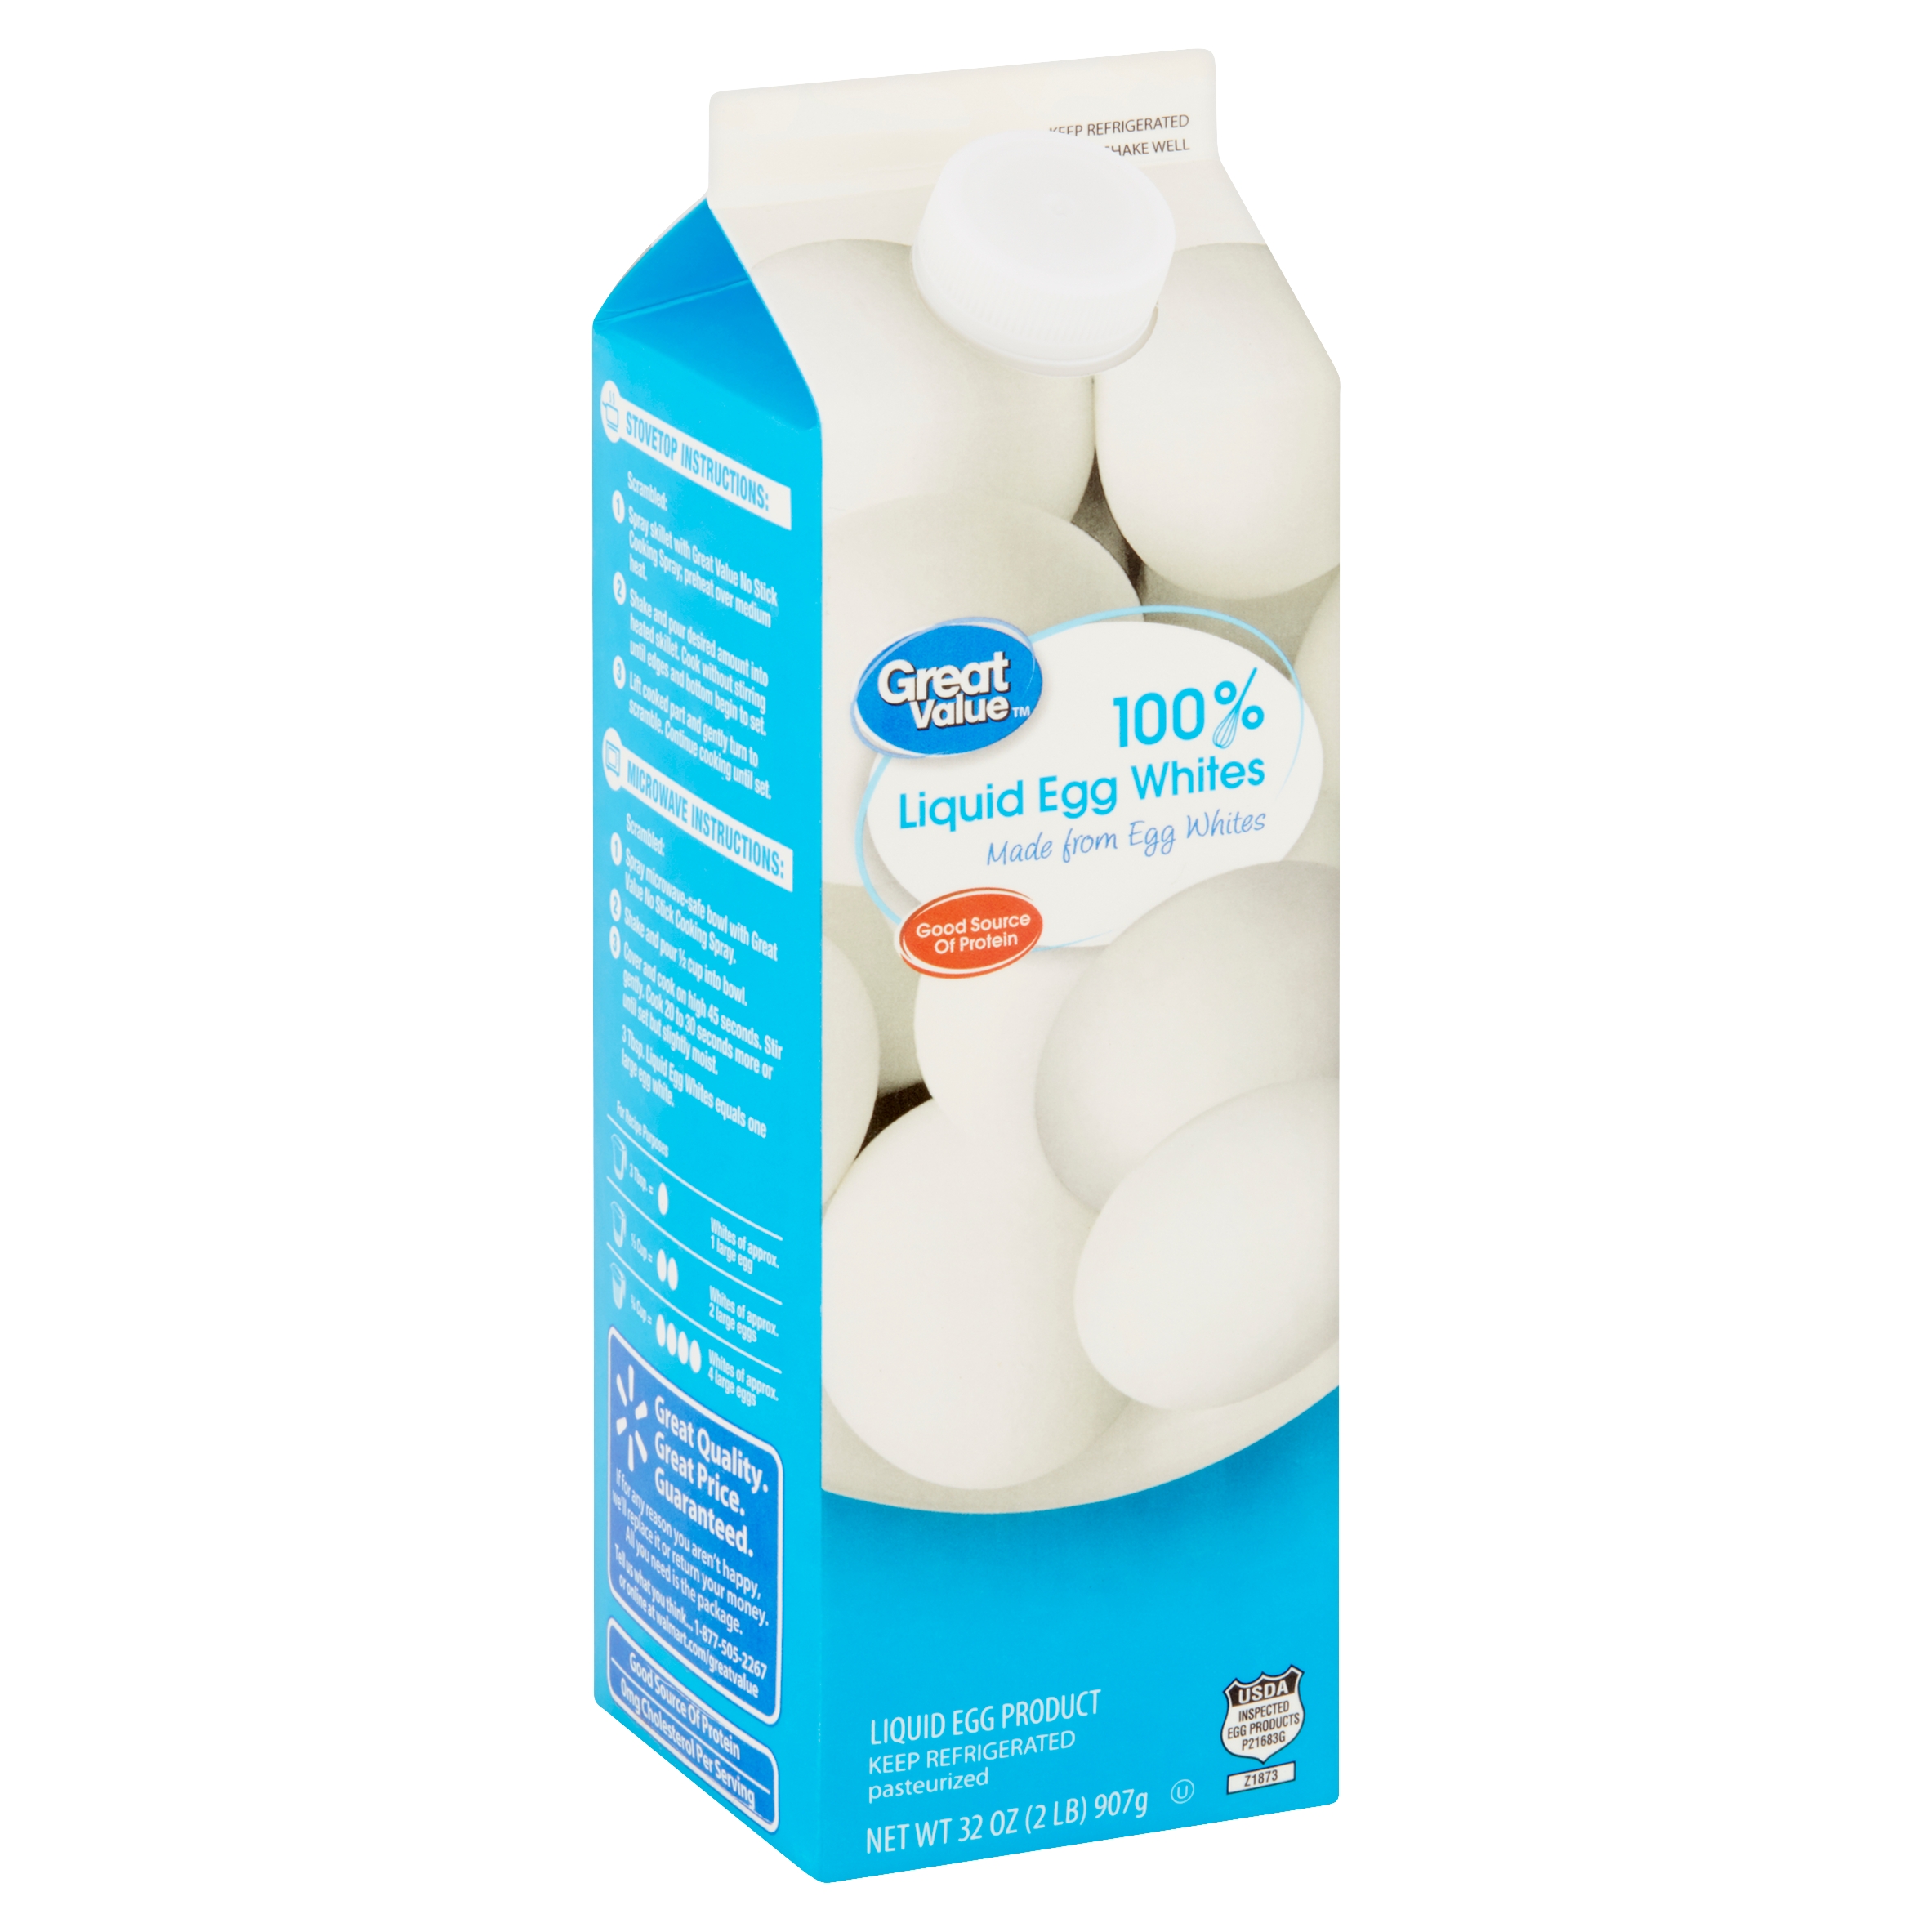 Great Value 100% Liquid Egg Whites, 32 oz - image 3 of 10